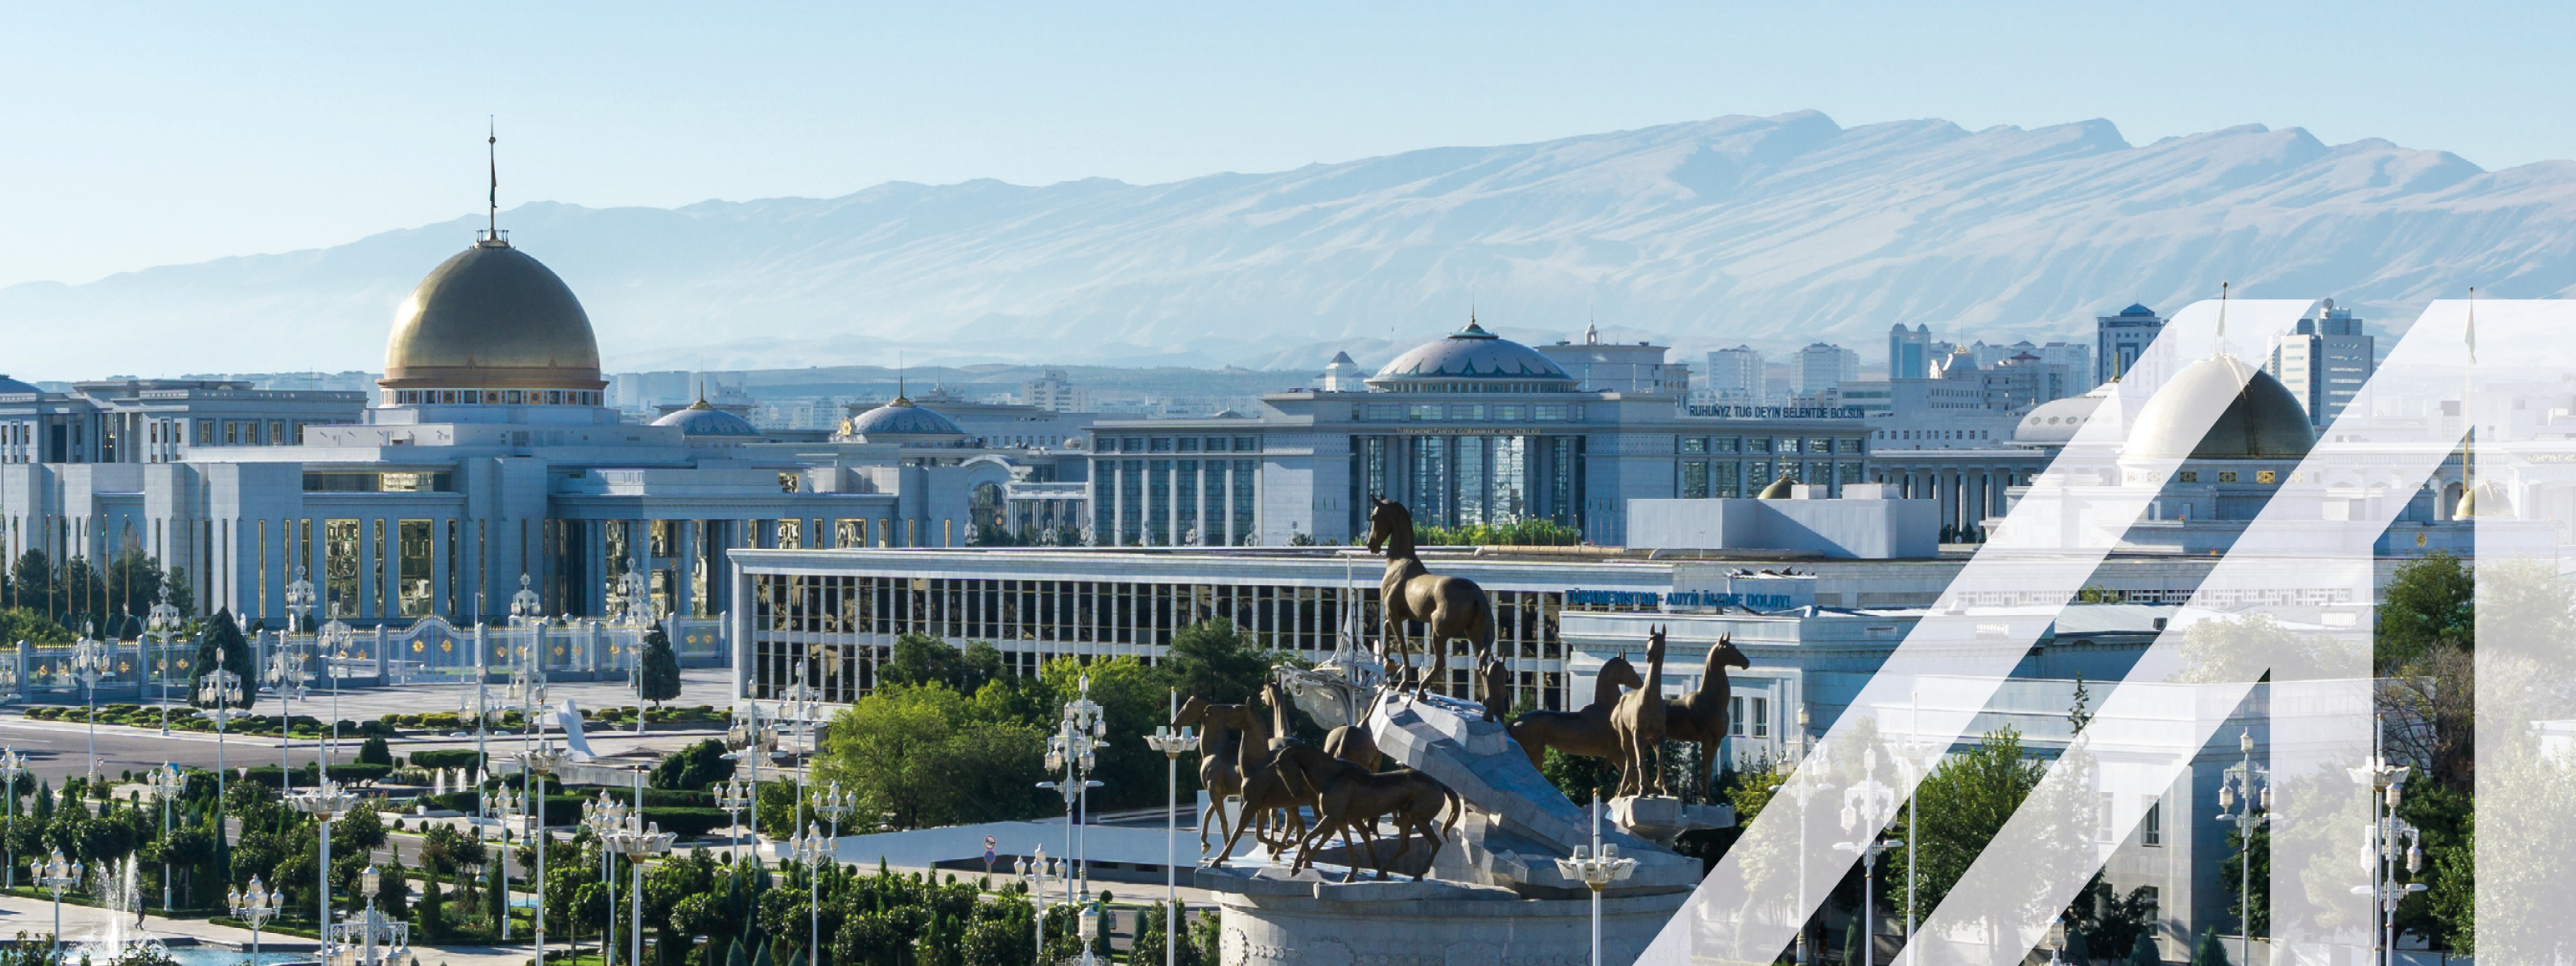 Blick auf den Präsidentenpalast (Oguzhan) mit goldener Kuppel und Pferde-Statue und Bergkette im Hintergrund in Ashkhabat Turkmenistan.
